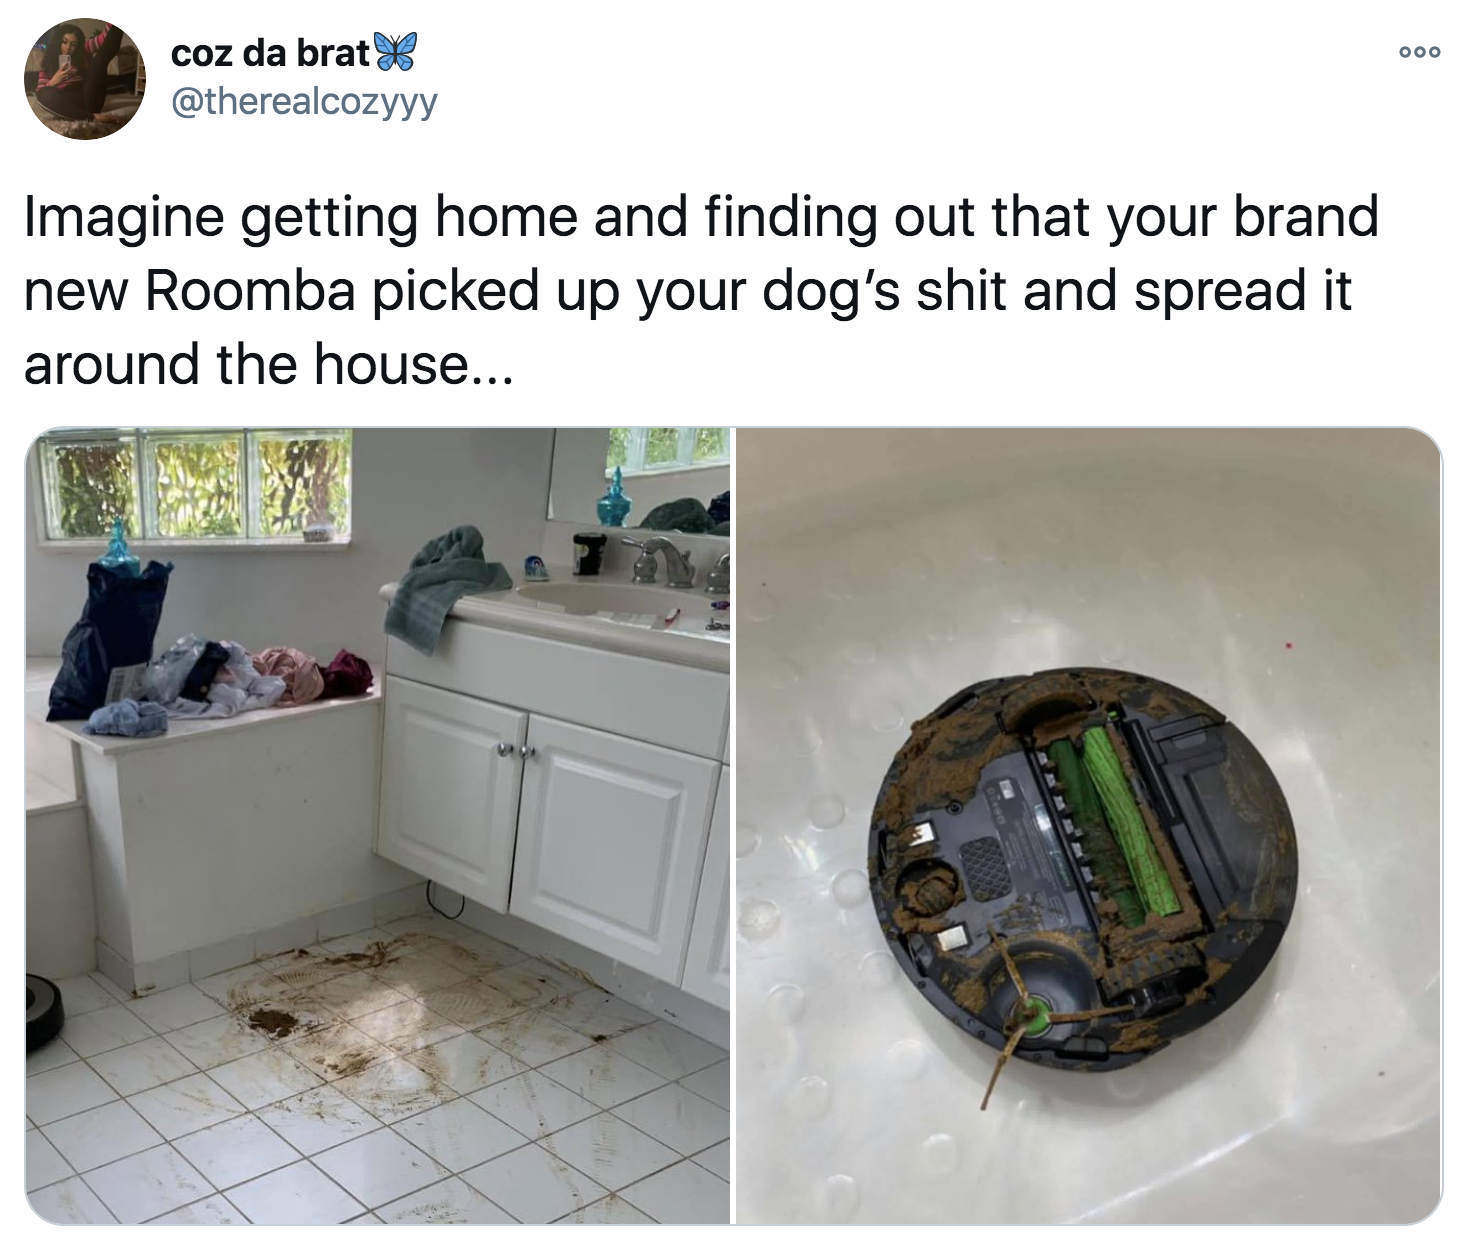 微博阅读想象回家,发现你的崭新的Roomba捡起你的狗屎和传播它在家里…